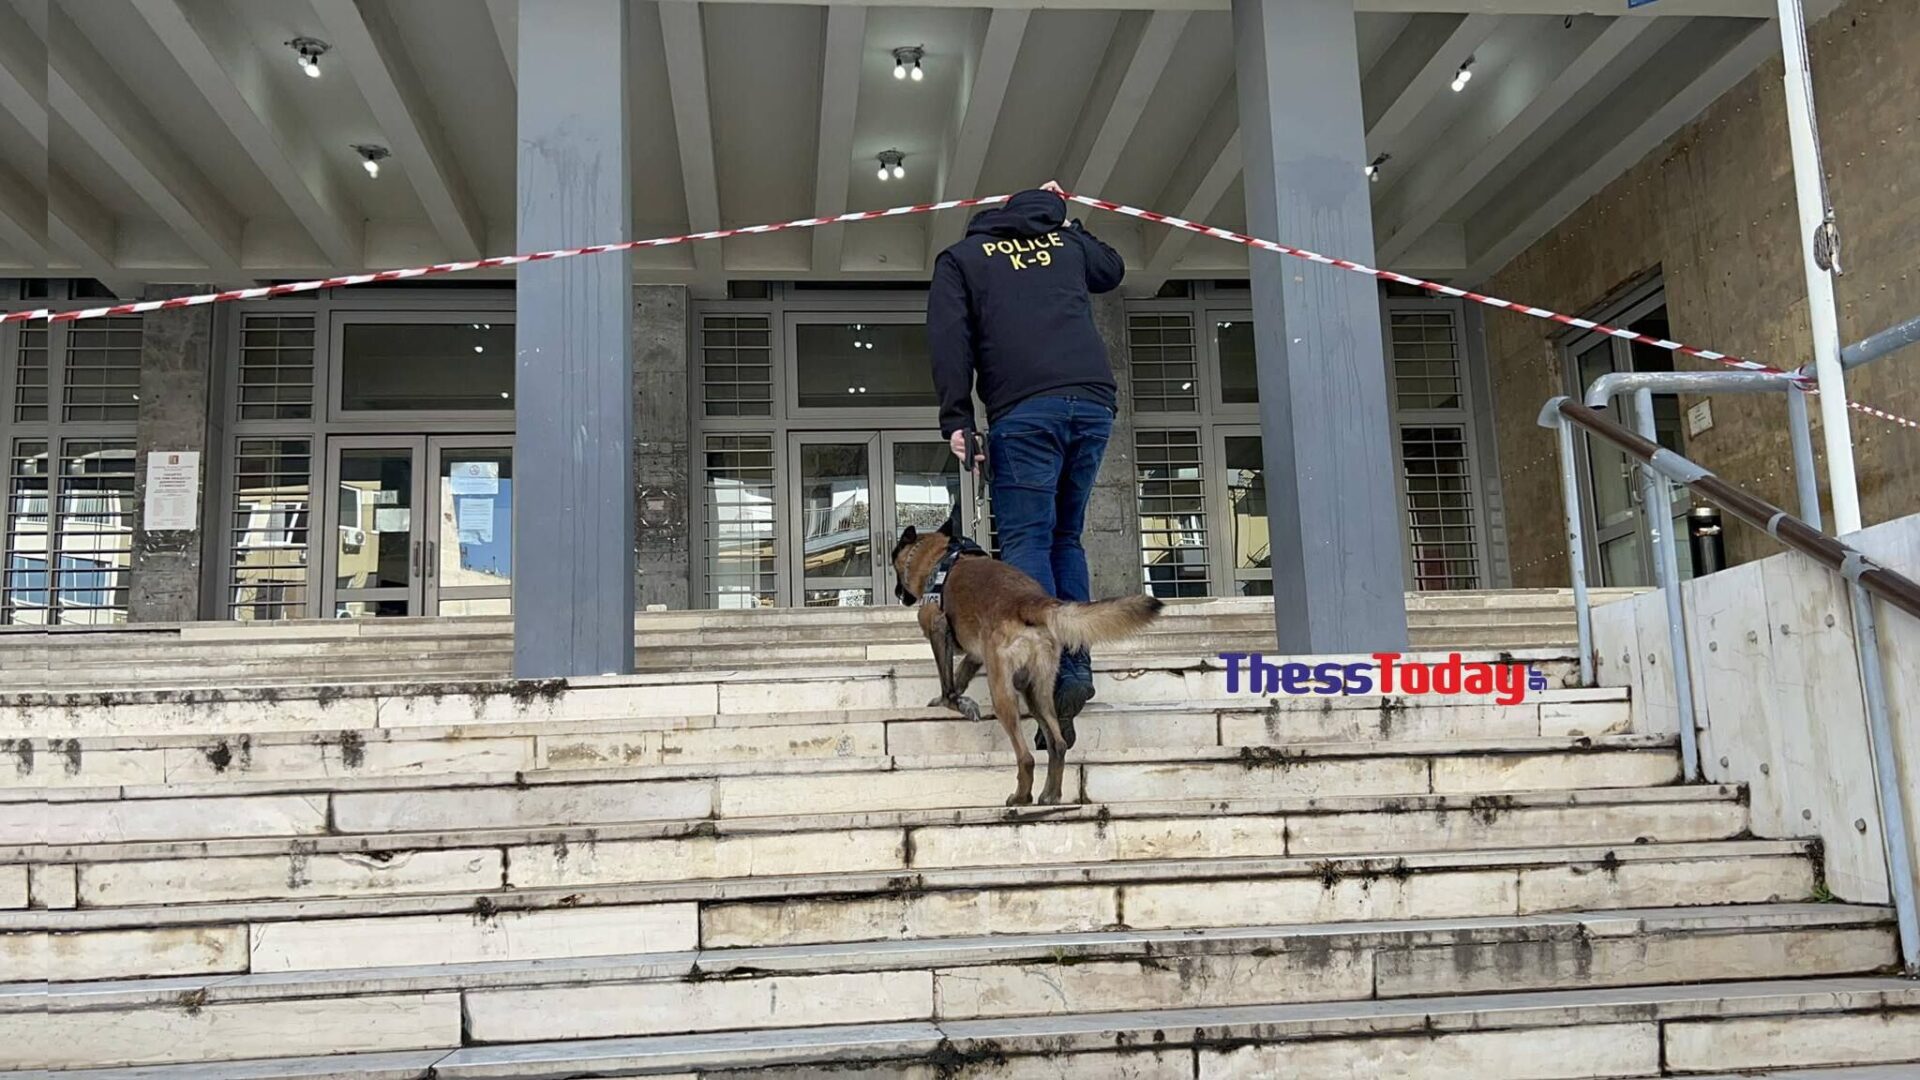 Θεσσαλονίκη: Βόμβα περιείχε ο φάκελος στα δικαστήρια